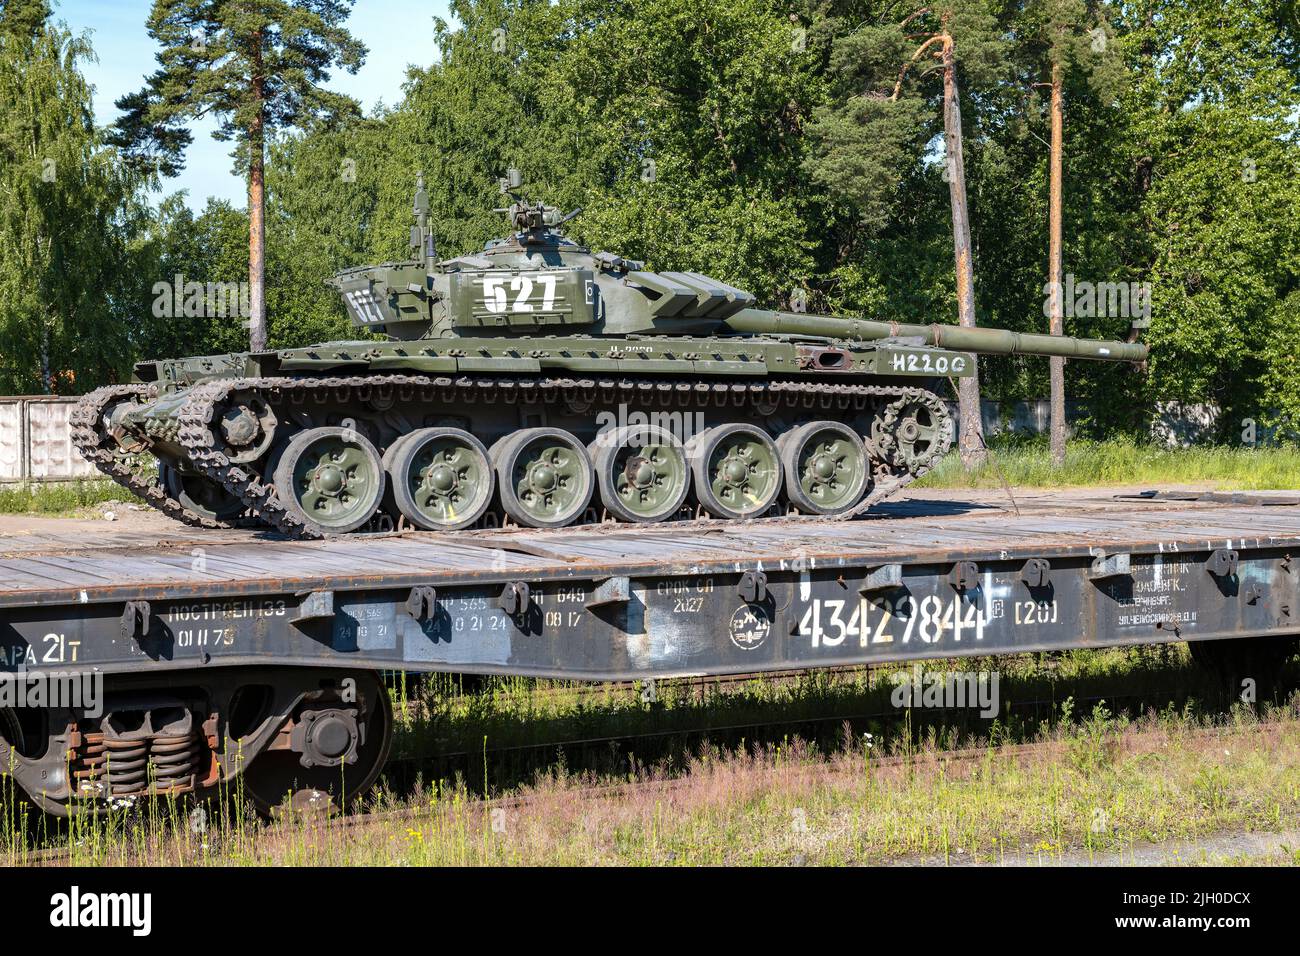 RÉGION DE LENINGRAD, RUSSIE - 02 JUILLET 2022 : char russe soviétique T-72B3 sur une plate-forme ferroviaire par une belle journée d'été Banque D'Images